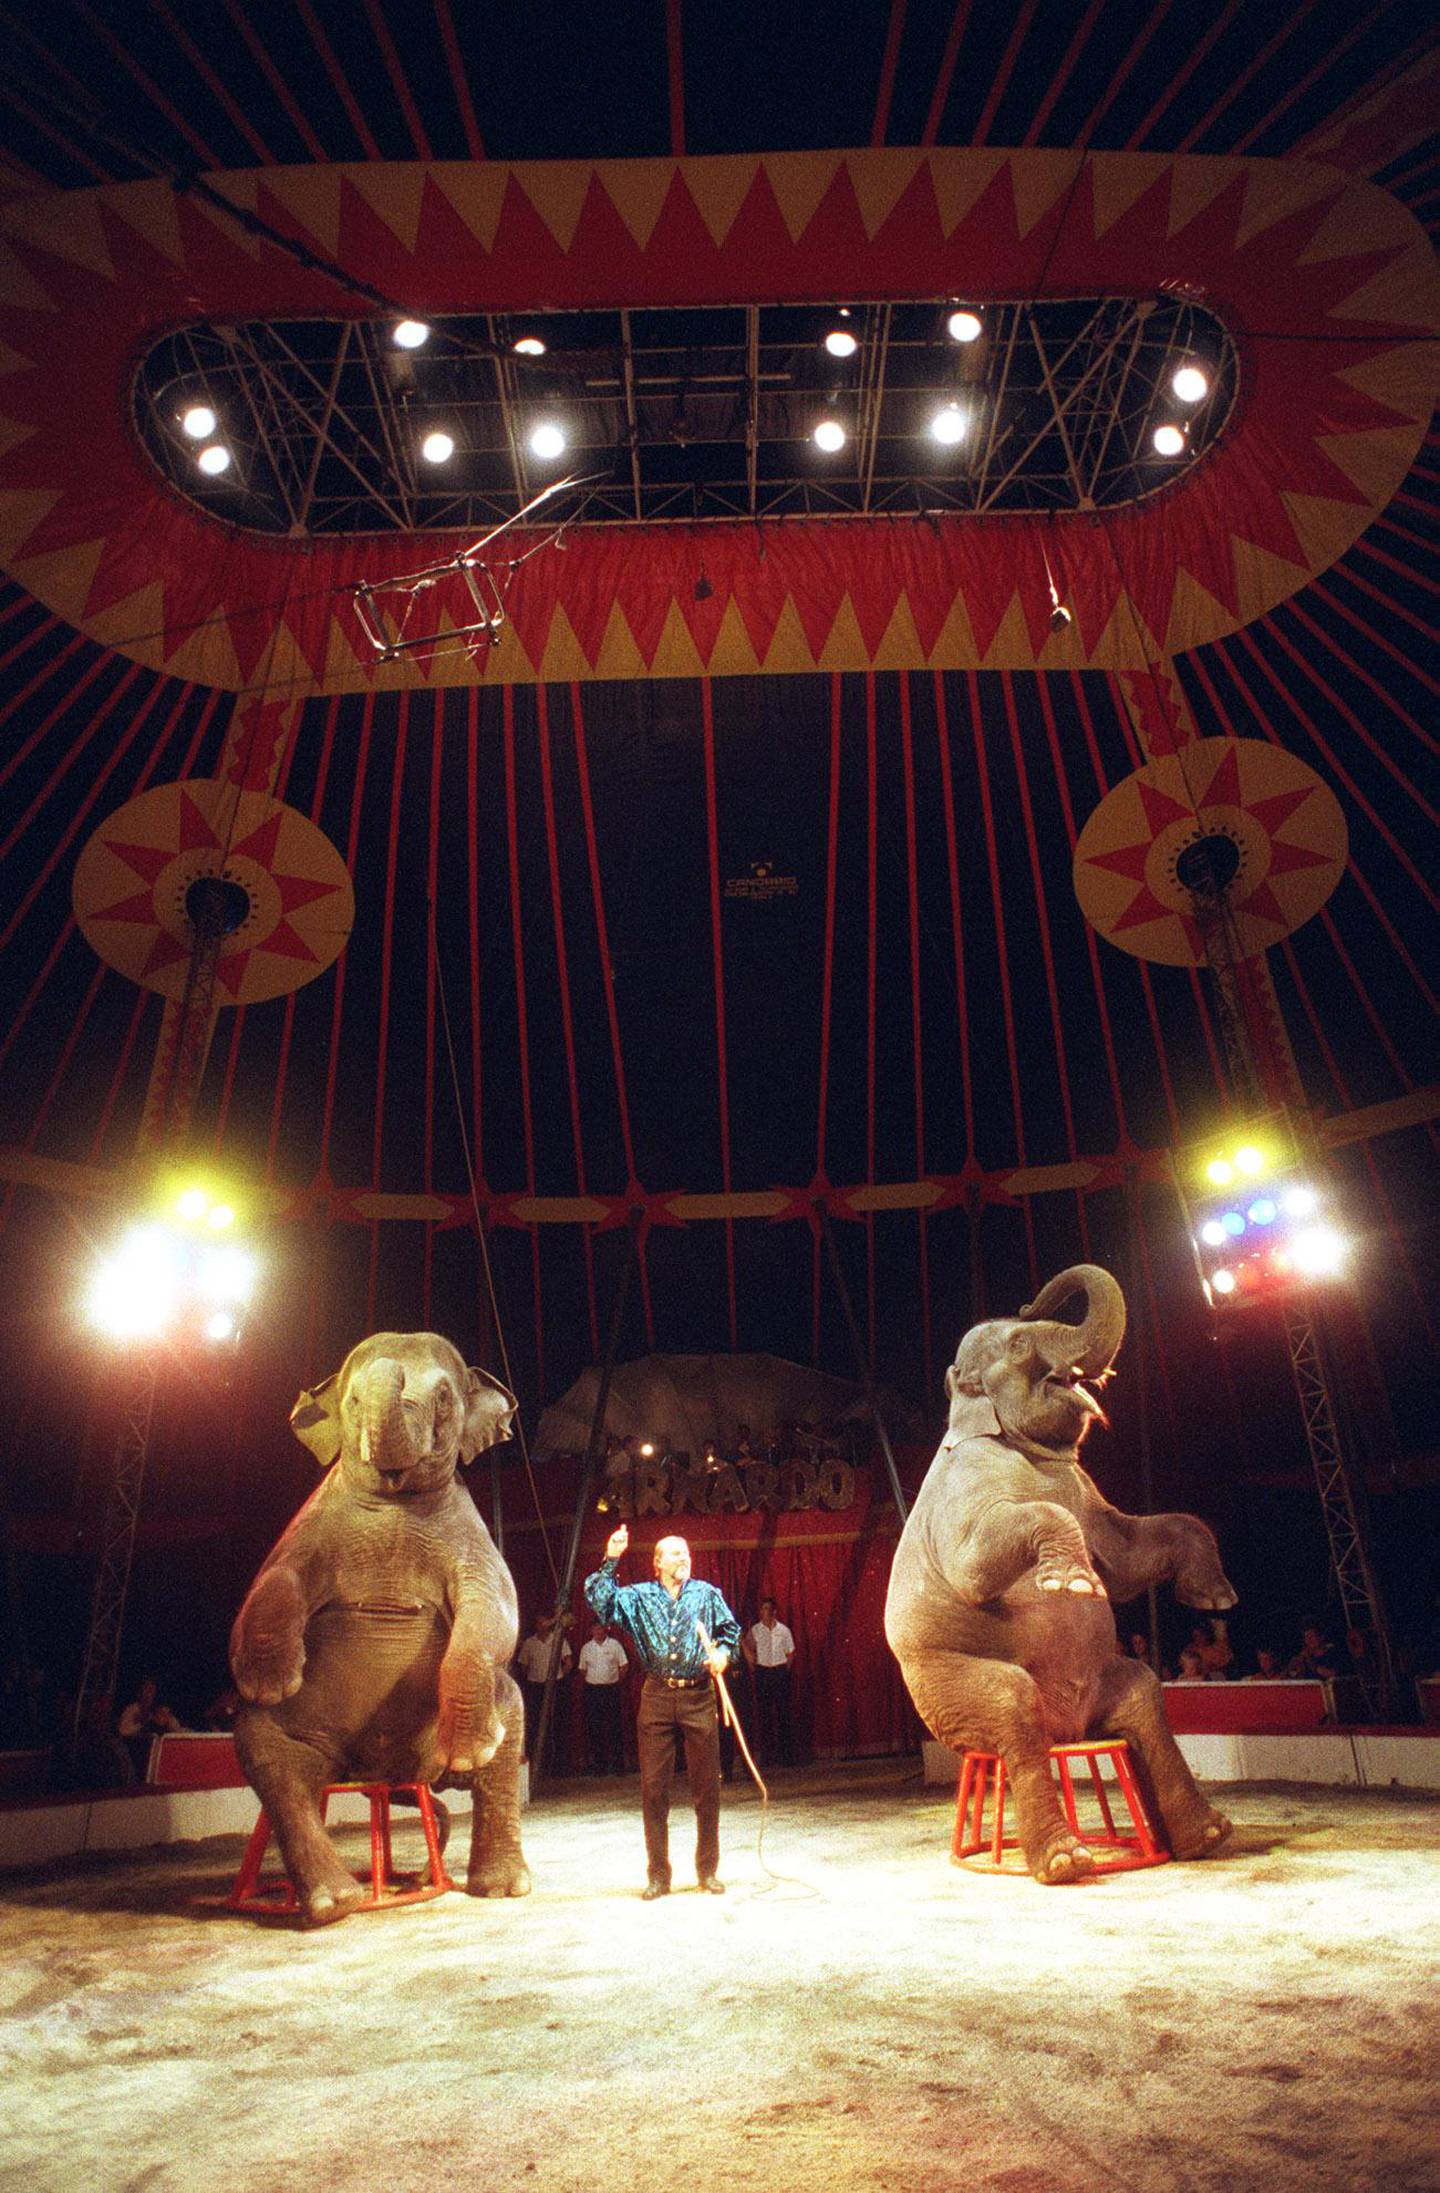 
Sirkus Arnardo. Sirkuselefantene er et klassisk og velkommende innslag hos Cirkus Arnardo.(Foto: Heiko Junge, NTB Pluss)
/ sirkus /